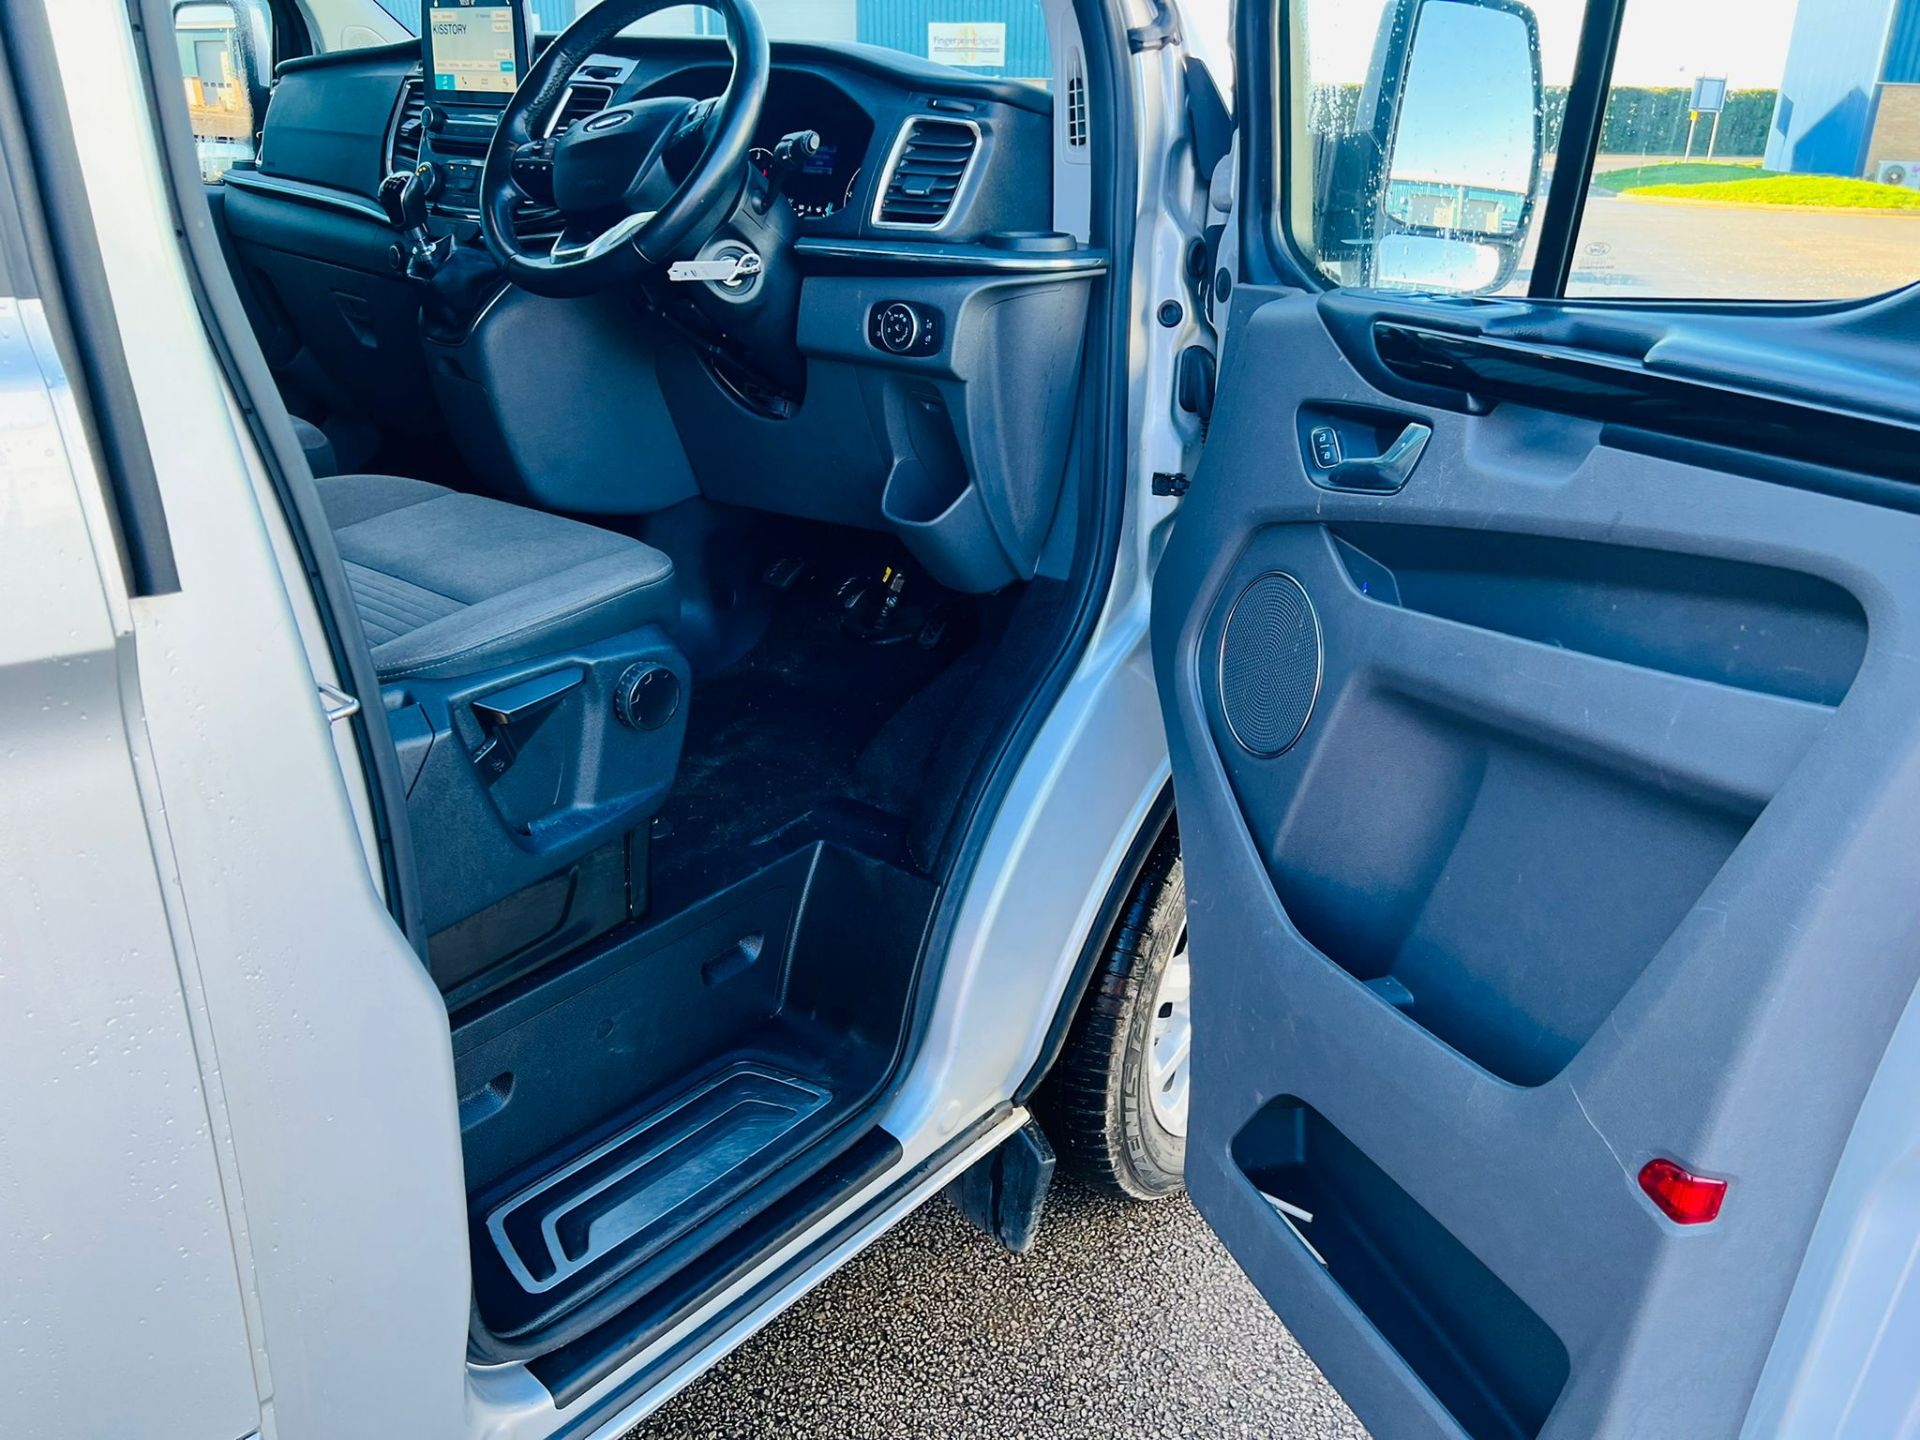 (Reserve Met) Ford Transit Custom 310 130 2.0 Tdci Titanium 9 Seater MiniBus 2019 Model - Air Con - - Image 13 of 36